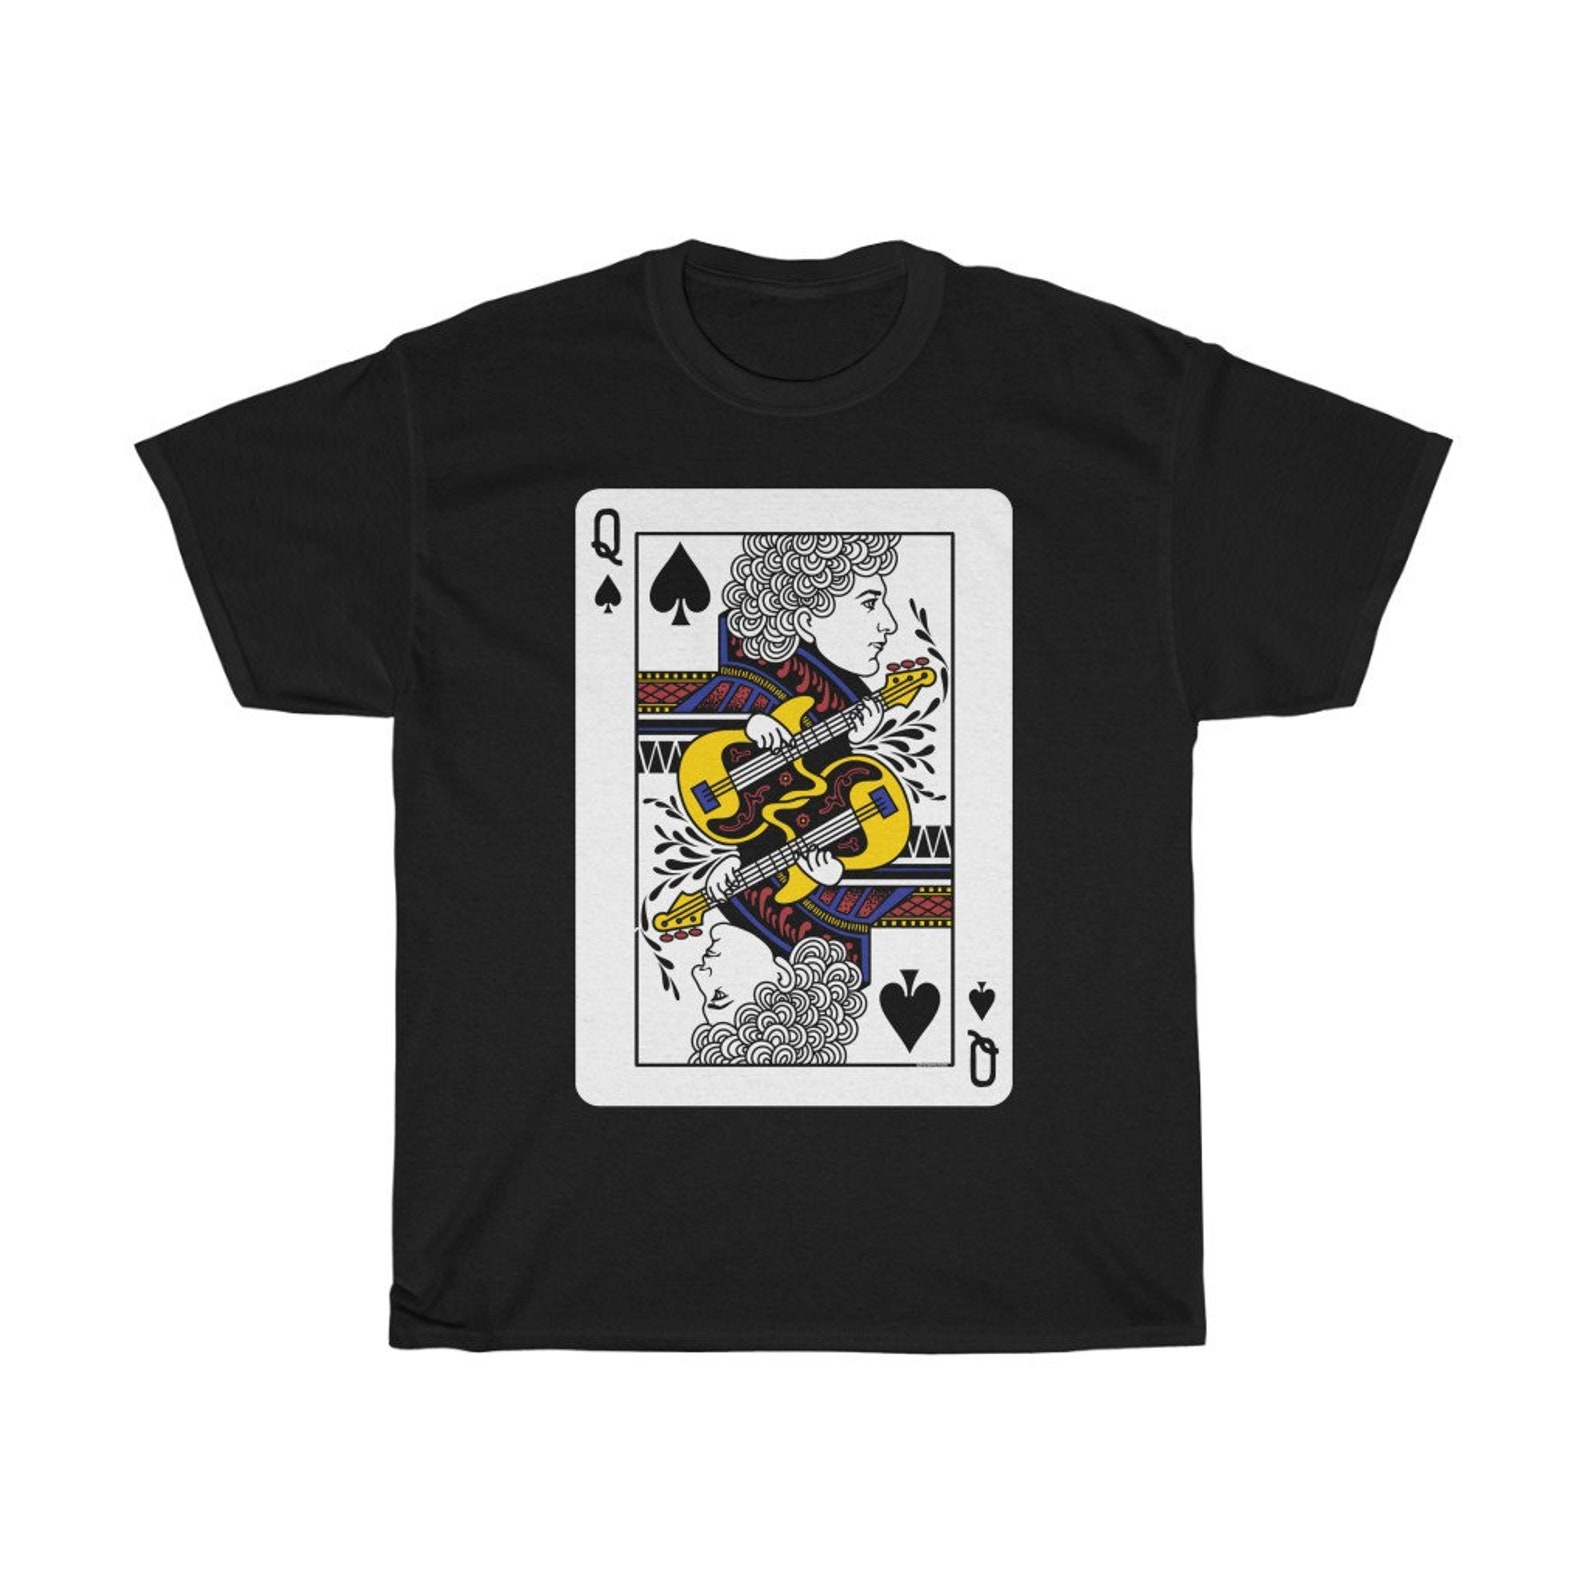 Queen John Deacon T shirts 4 colors | Etsy